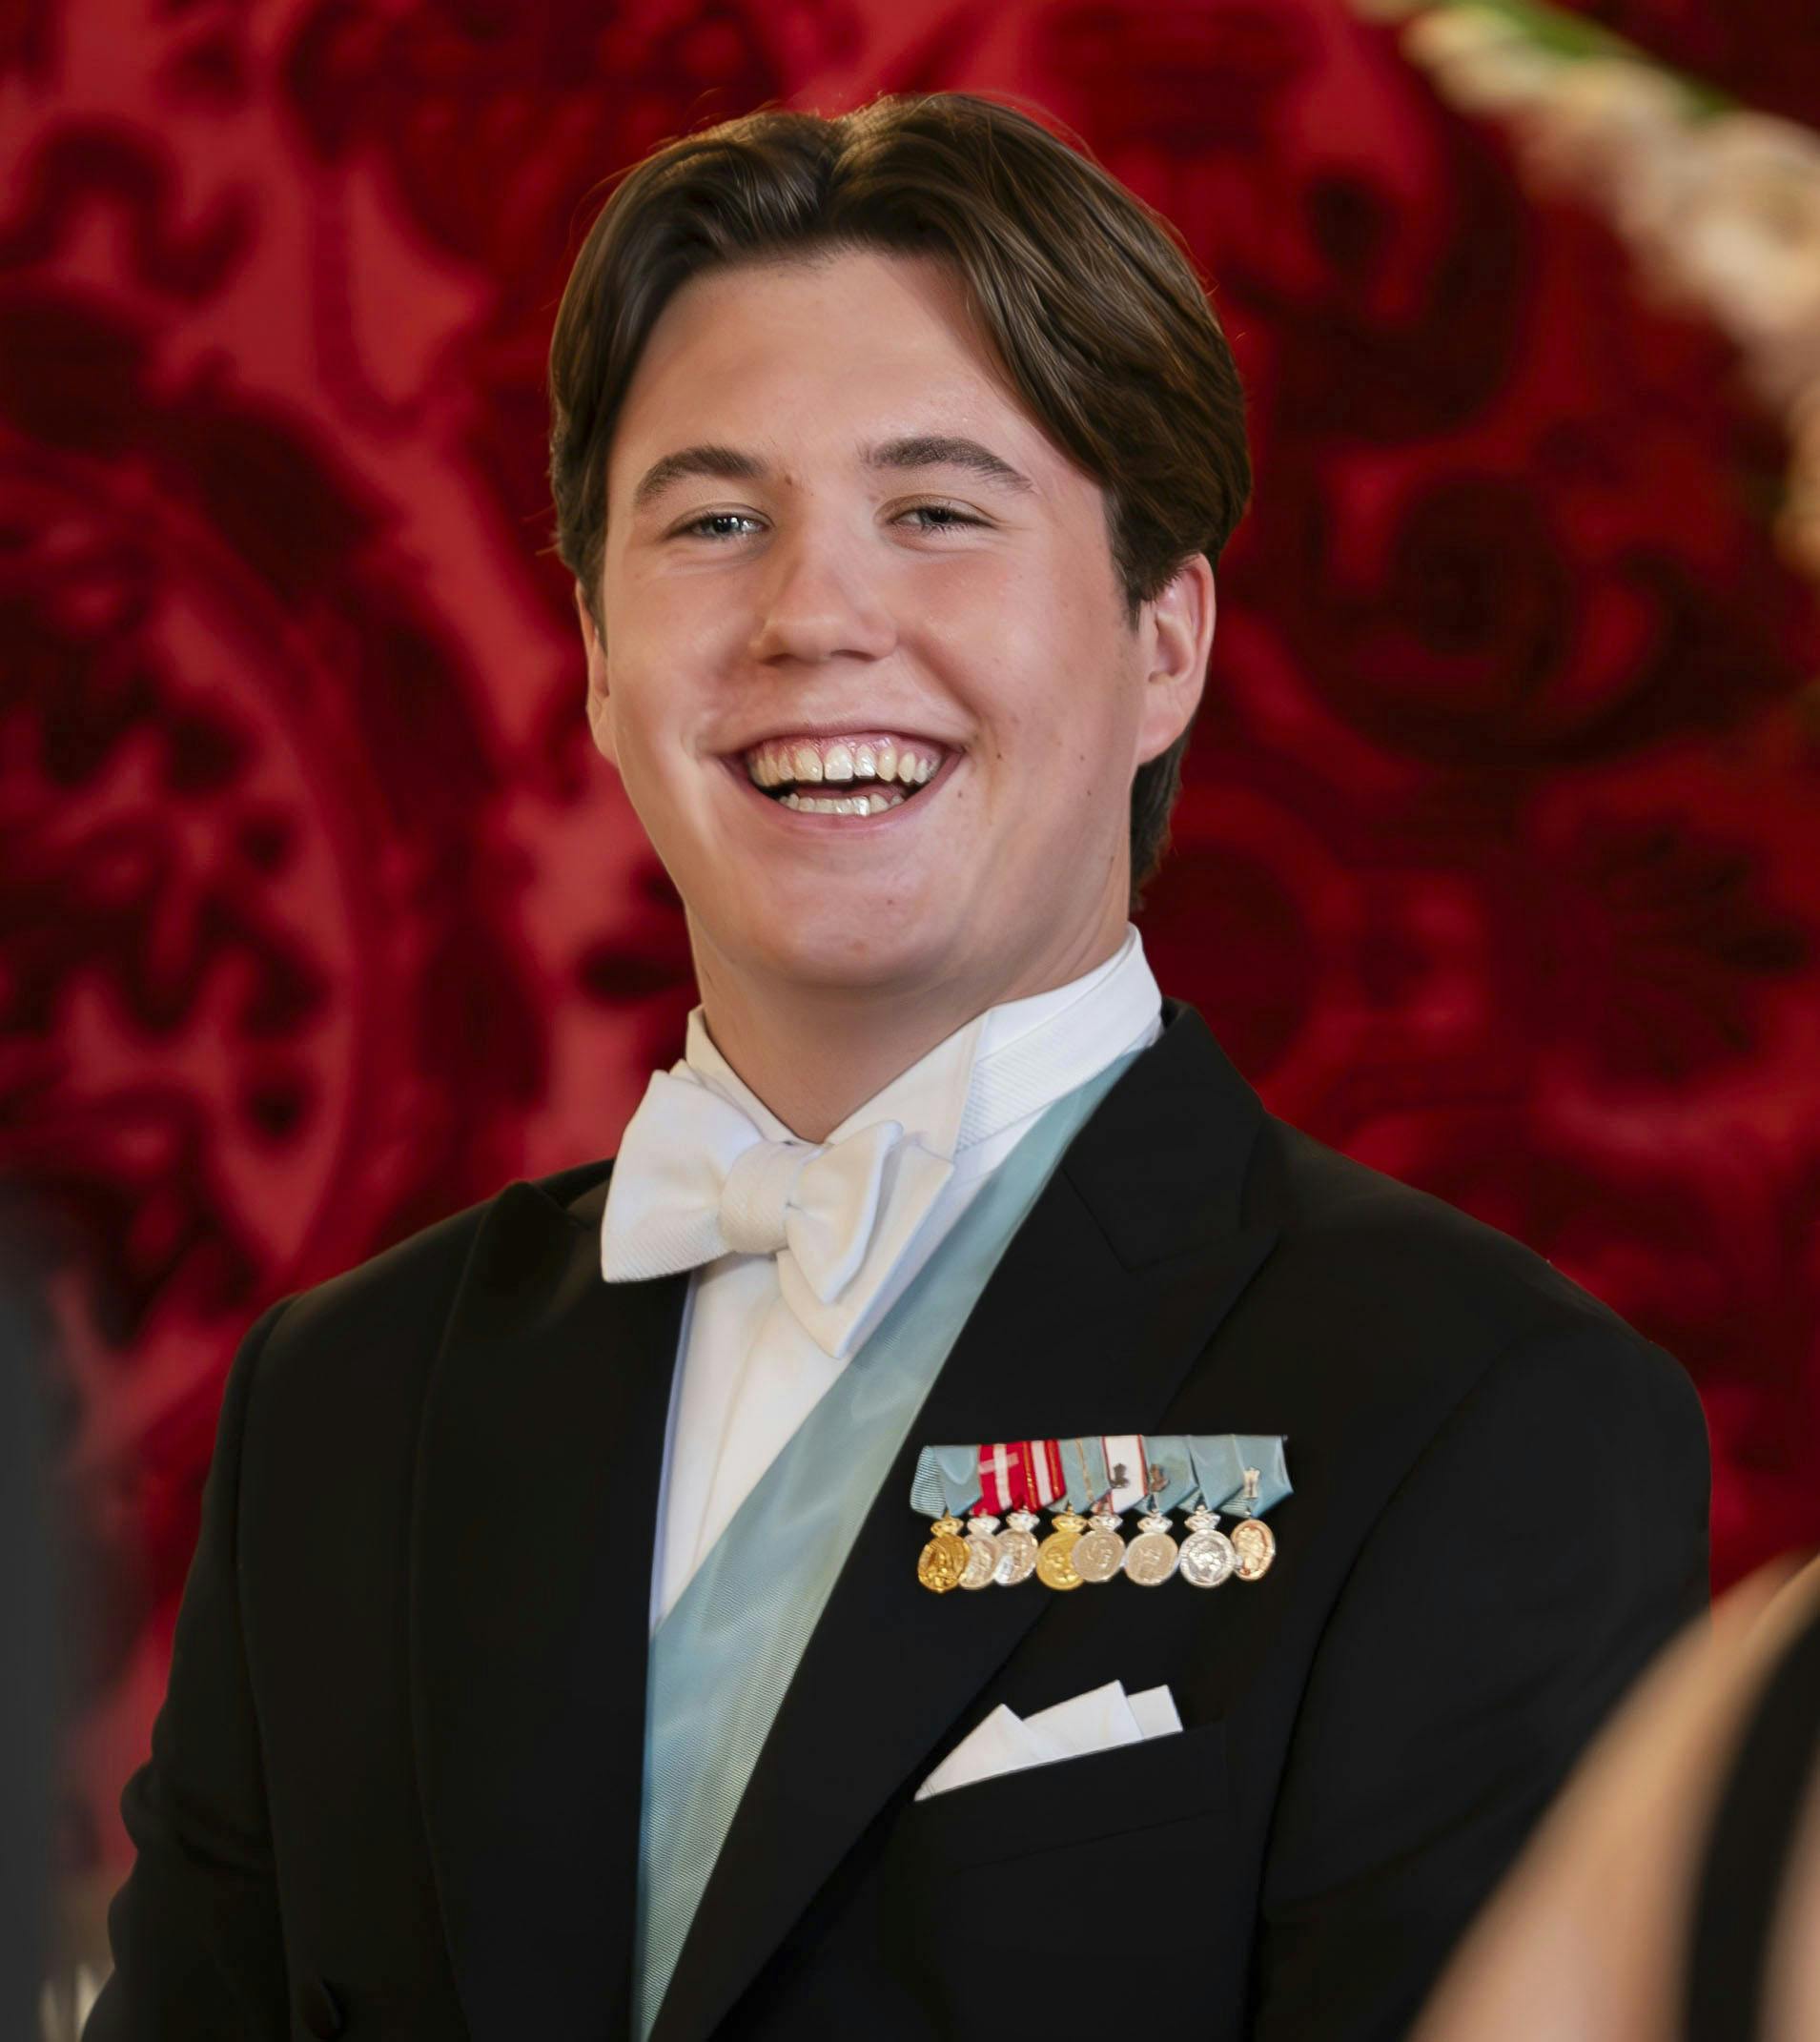 Kronprins Christian, 18, får nu en mere fremtrædende rolle i det monarki, han en dag skal overtage.